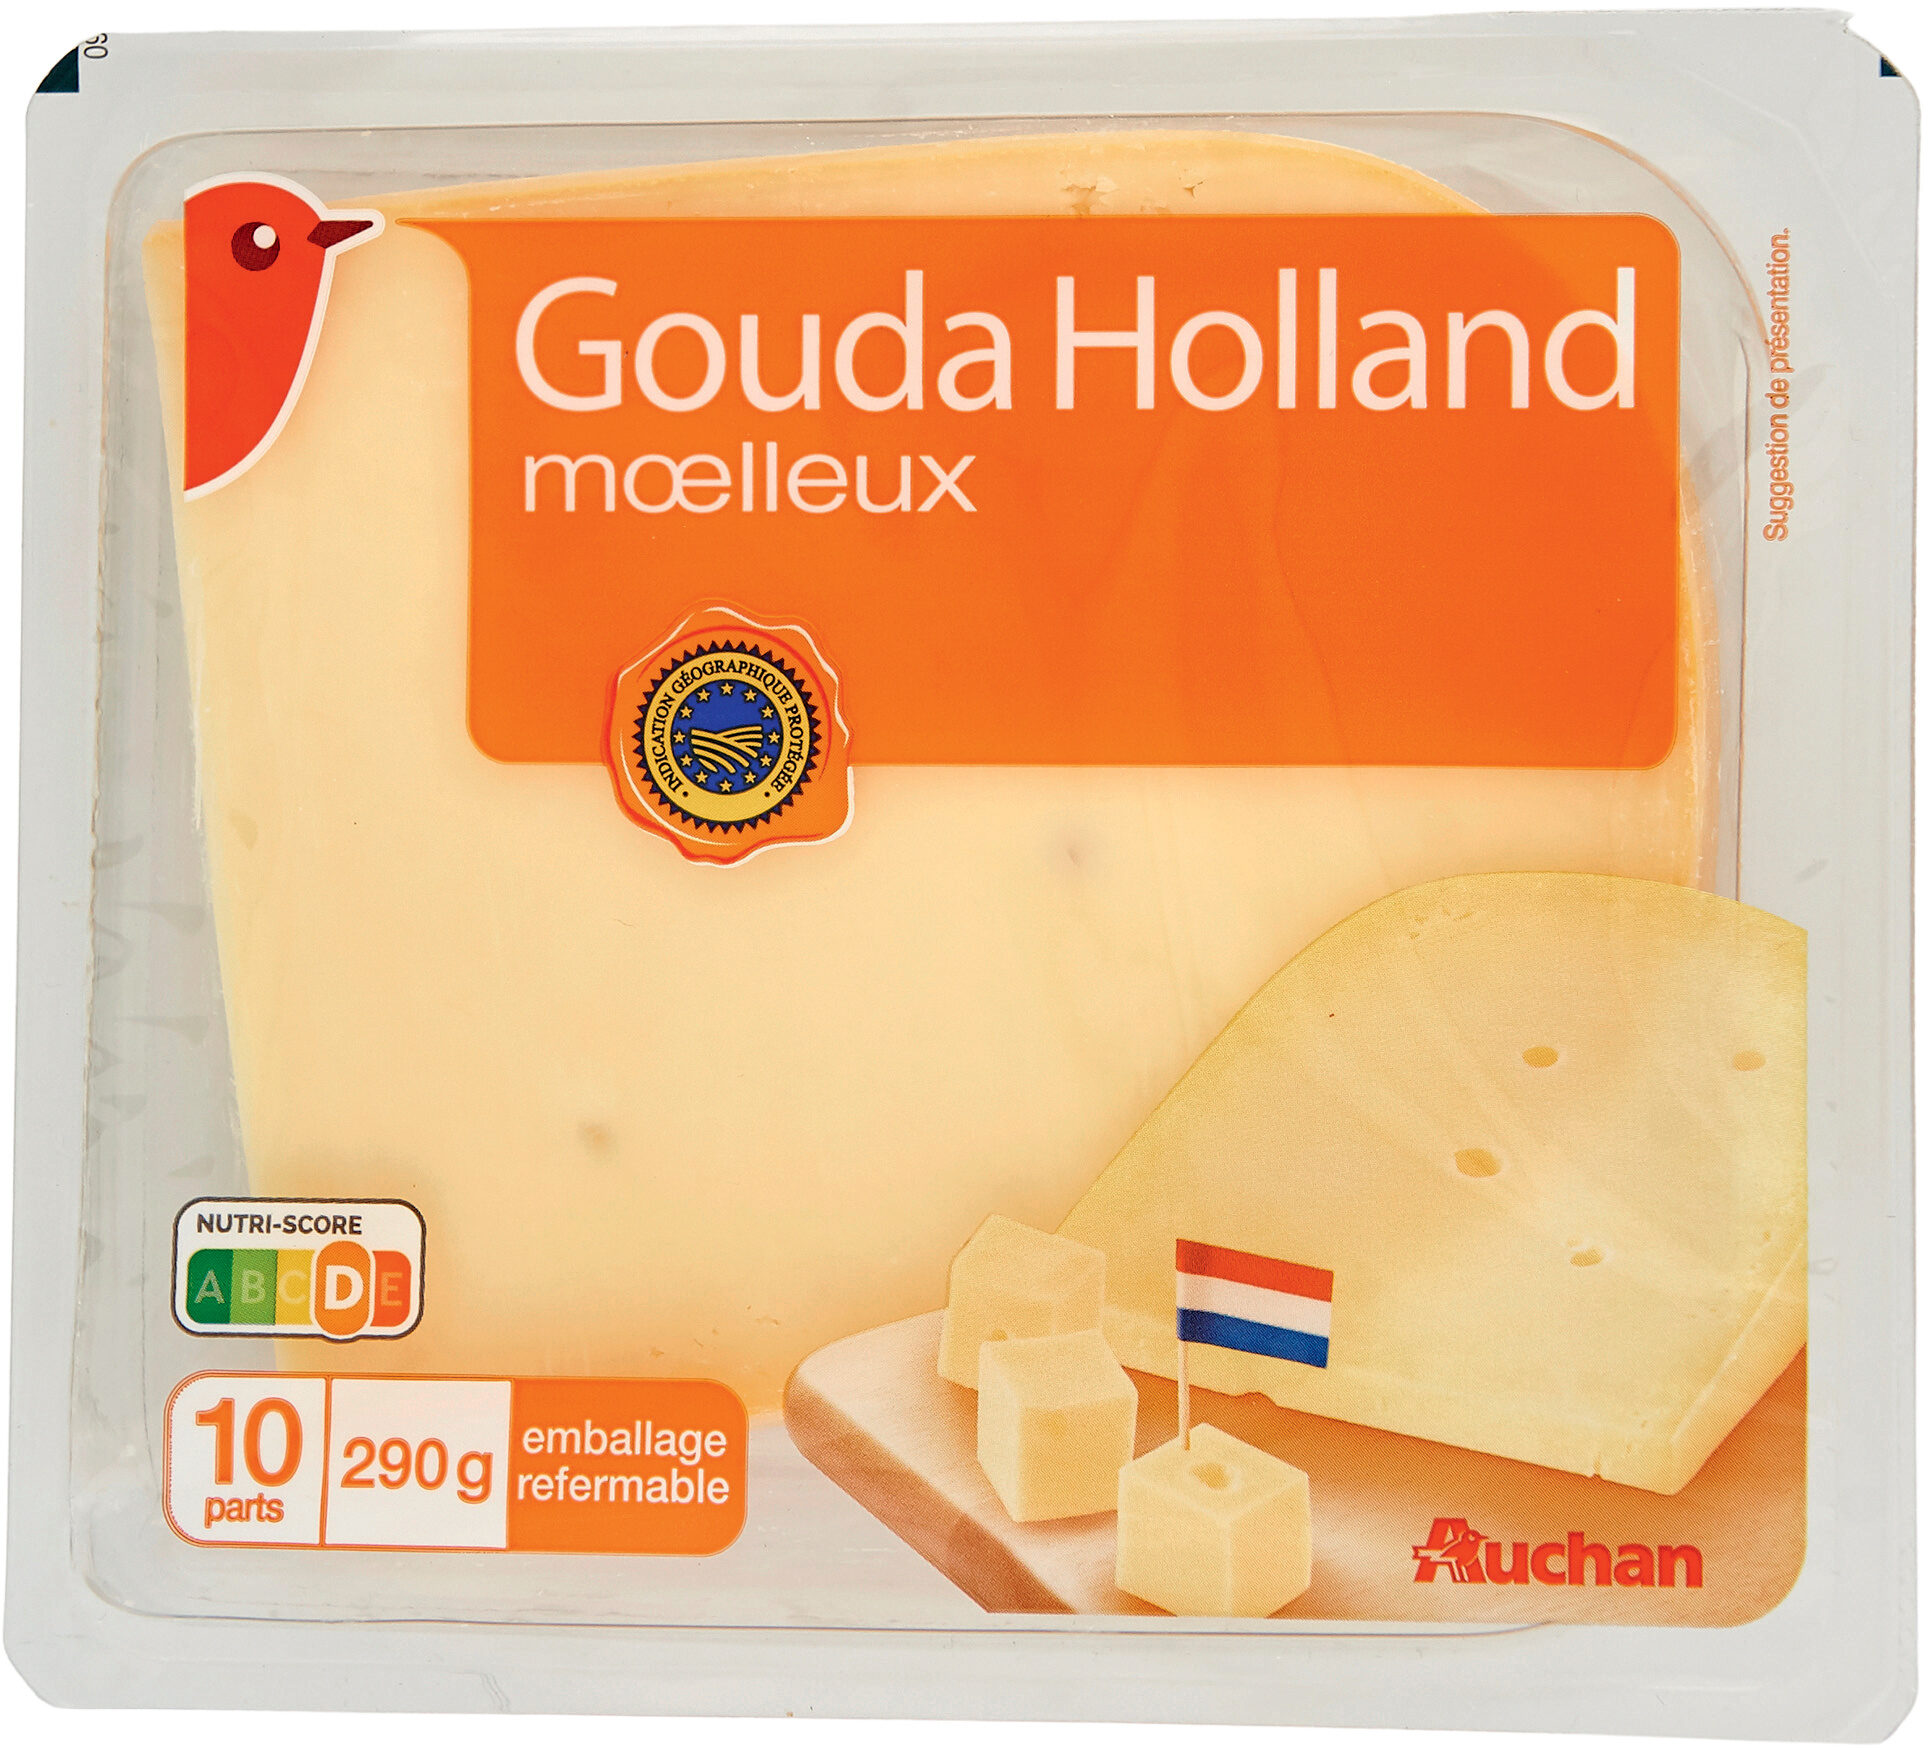 Gouda Holland - Product - fr